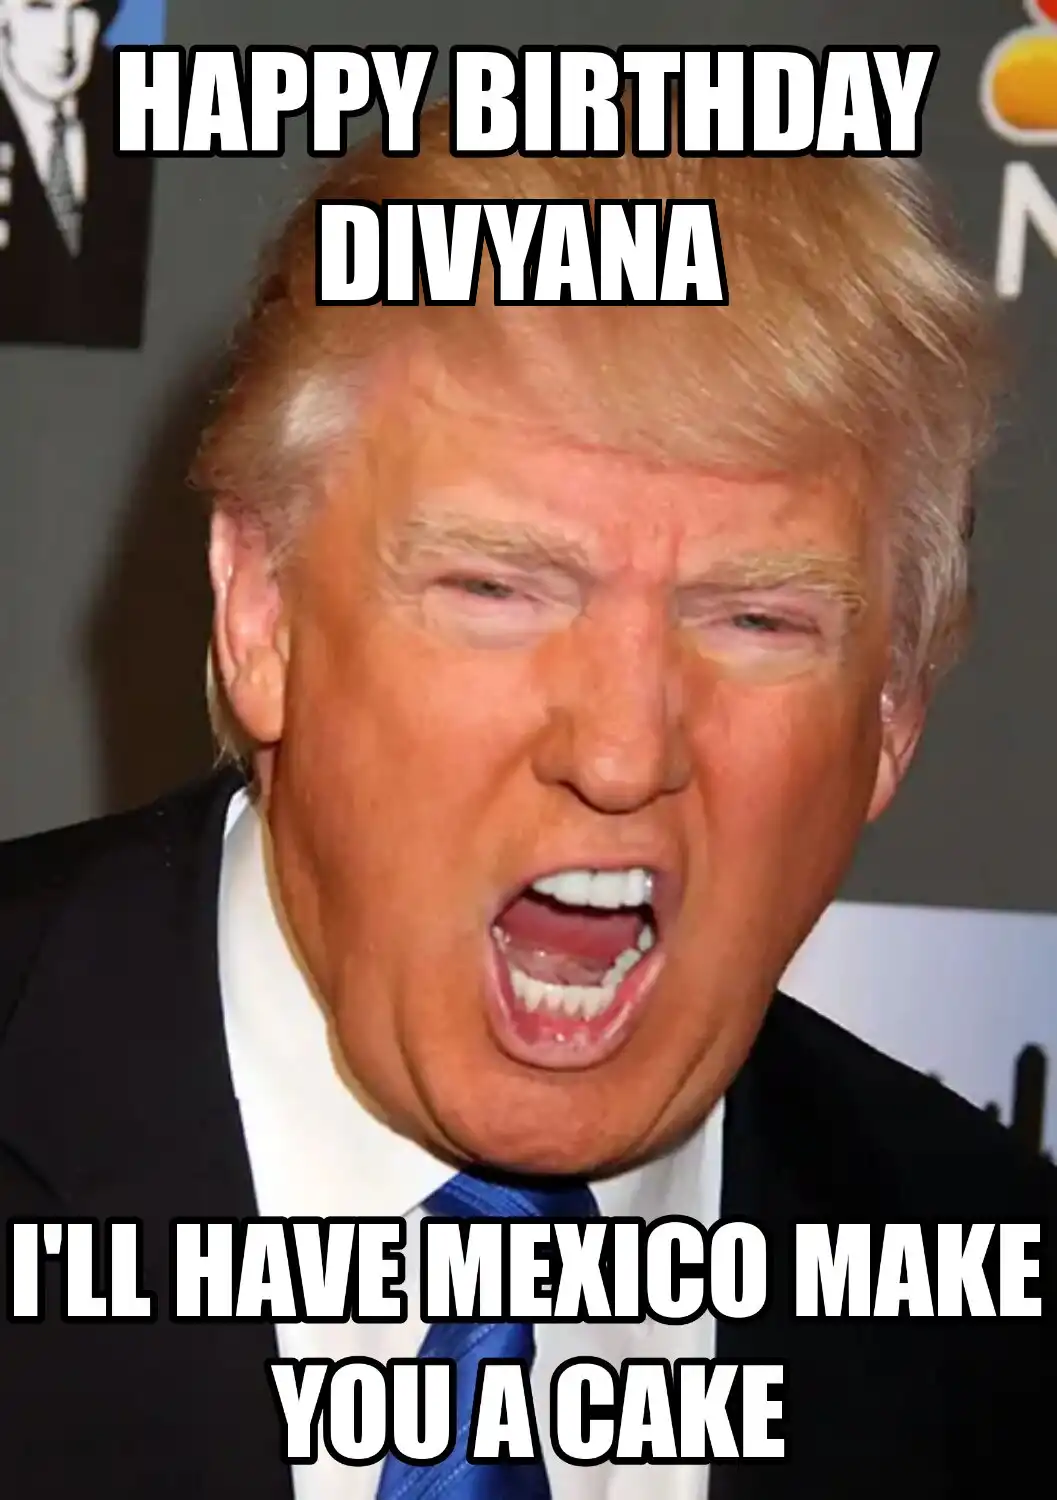 Happy Birthday Divyana Mexico Make You A Cake Meme